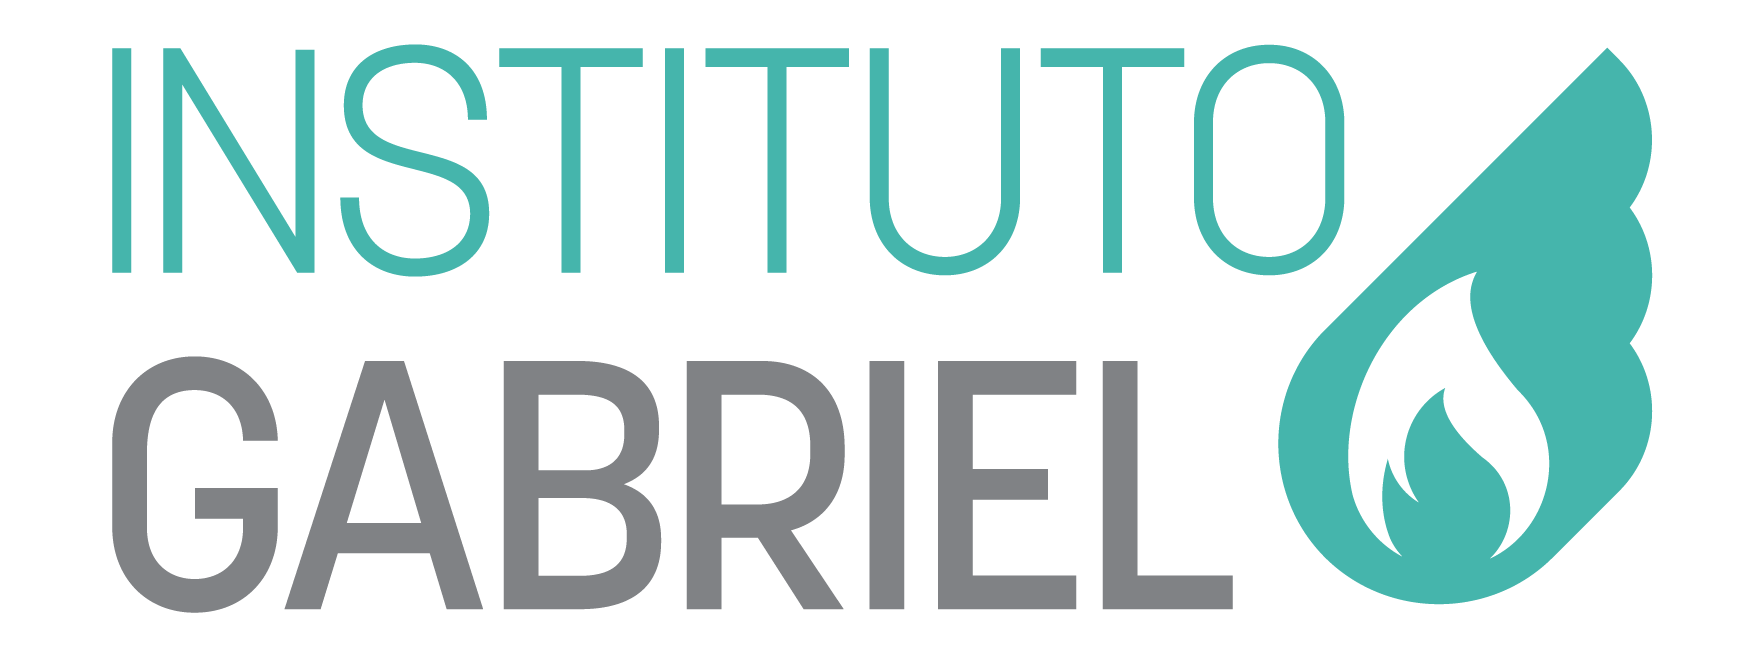 Logotipo do Instituto GABRIEL em texto de duas linhas, a palavra instituto em verde e GABRIEL em cinza, com uma chama na cor verde à direita